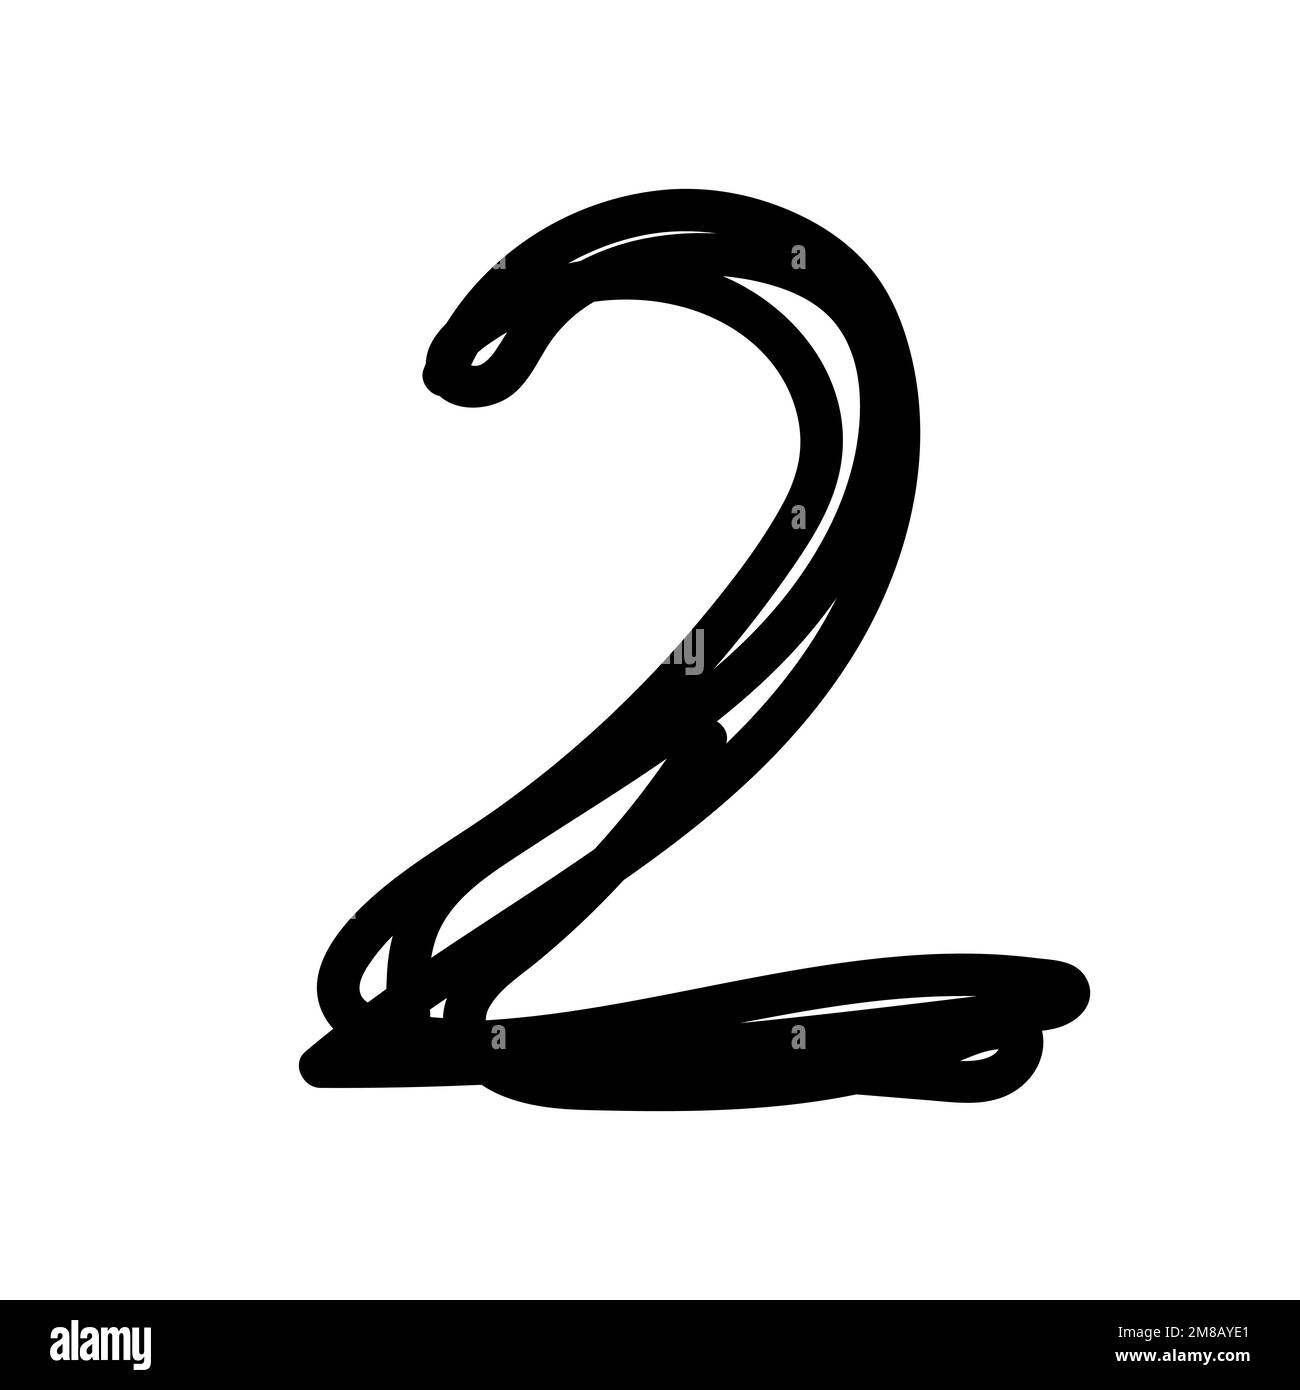 Doodle zwei. Schwarz lackiert mit einer Pinselnummer isoliert auf weißem Hintergrund. Handgezeichnet, verheddert, 2, geschrieben mit Tinte, Filzstift. Minimalistische Schrift Stock Vektor